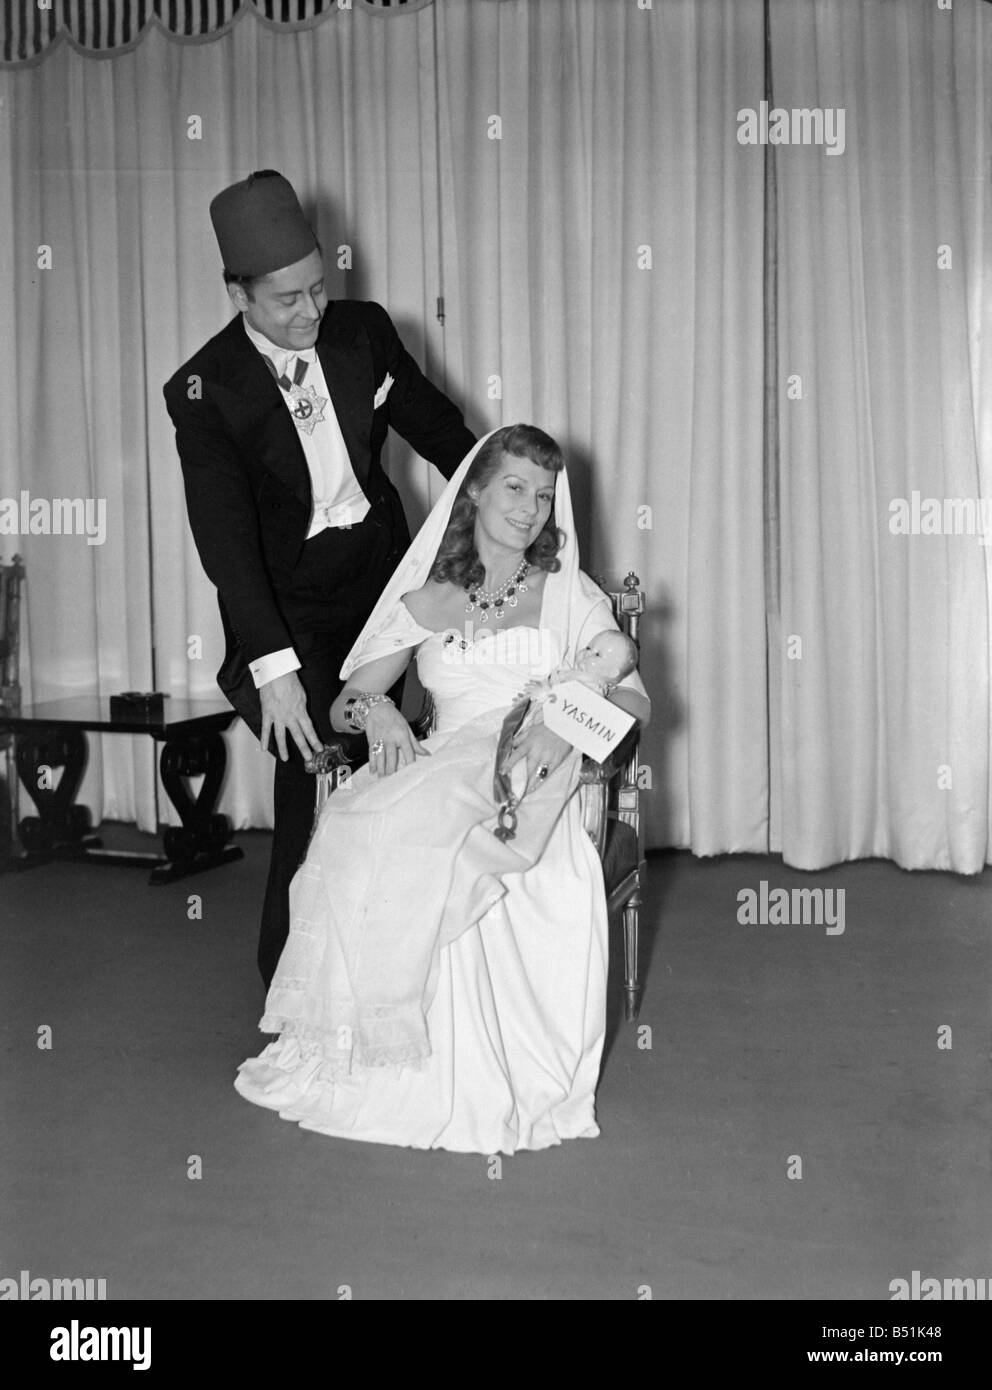 Ann Seymour et mari, Digby Maston Fashion designer est venu habillé comme Rita Hayworth, Aly Khan et de l'enfant à de nouvelles années de travail. 195 Banque D'Images